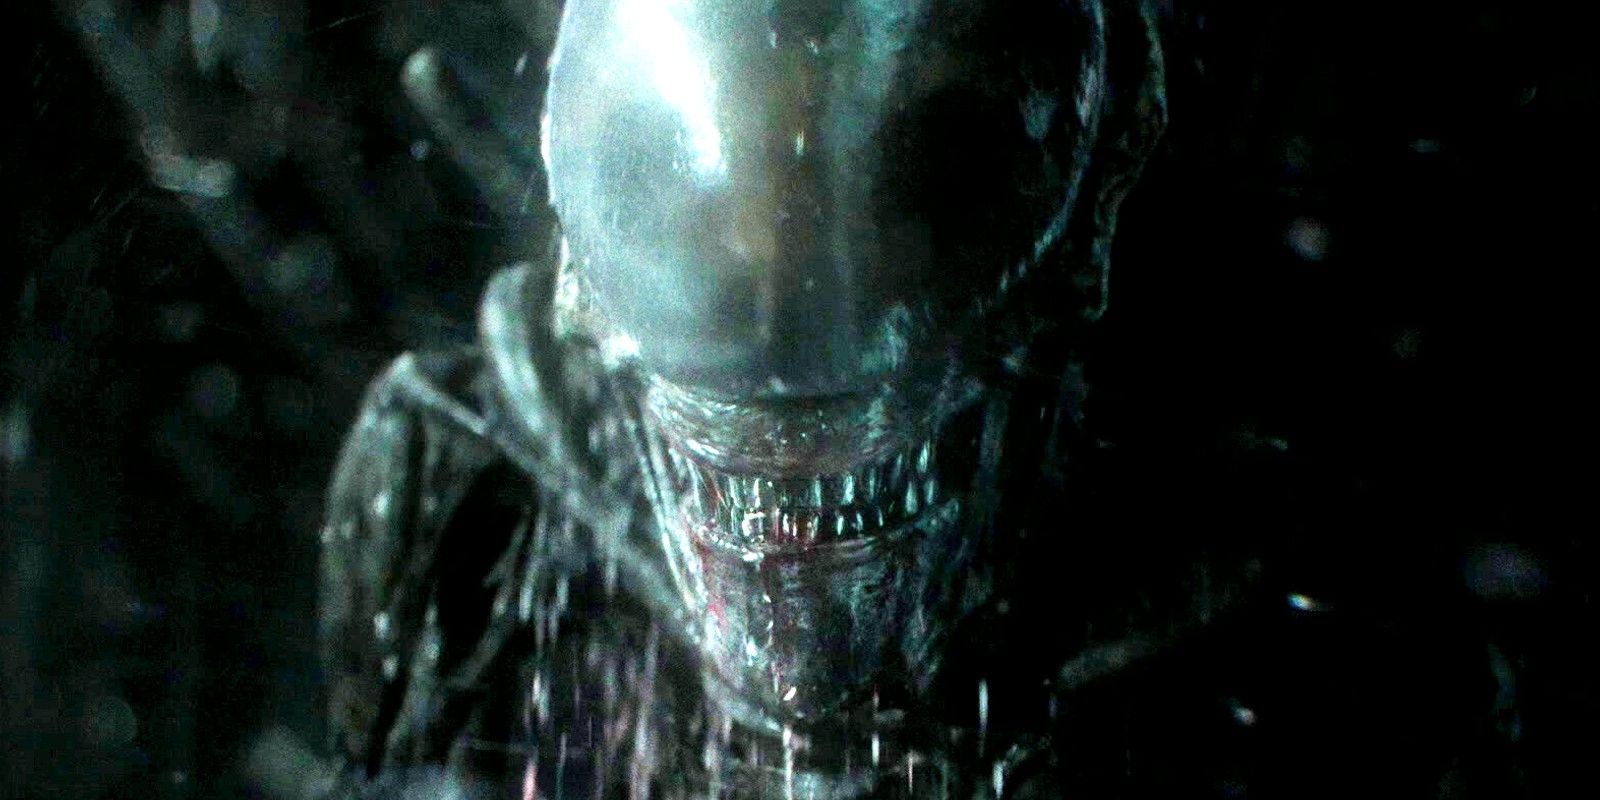 El estado de filmación del programa de televisión Alien después de la interrupción de la producción recibe una actualización alentadora del showrunner